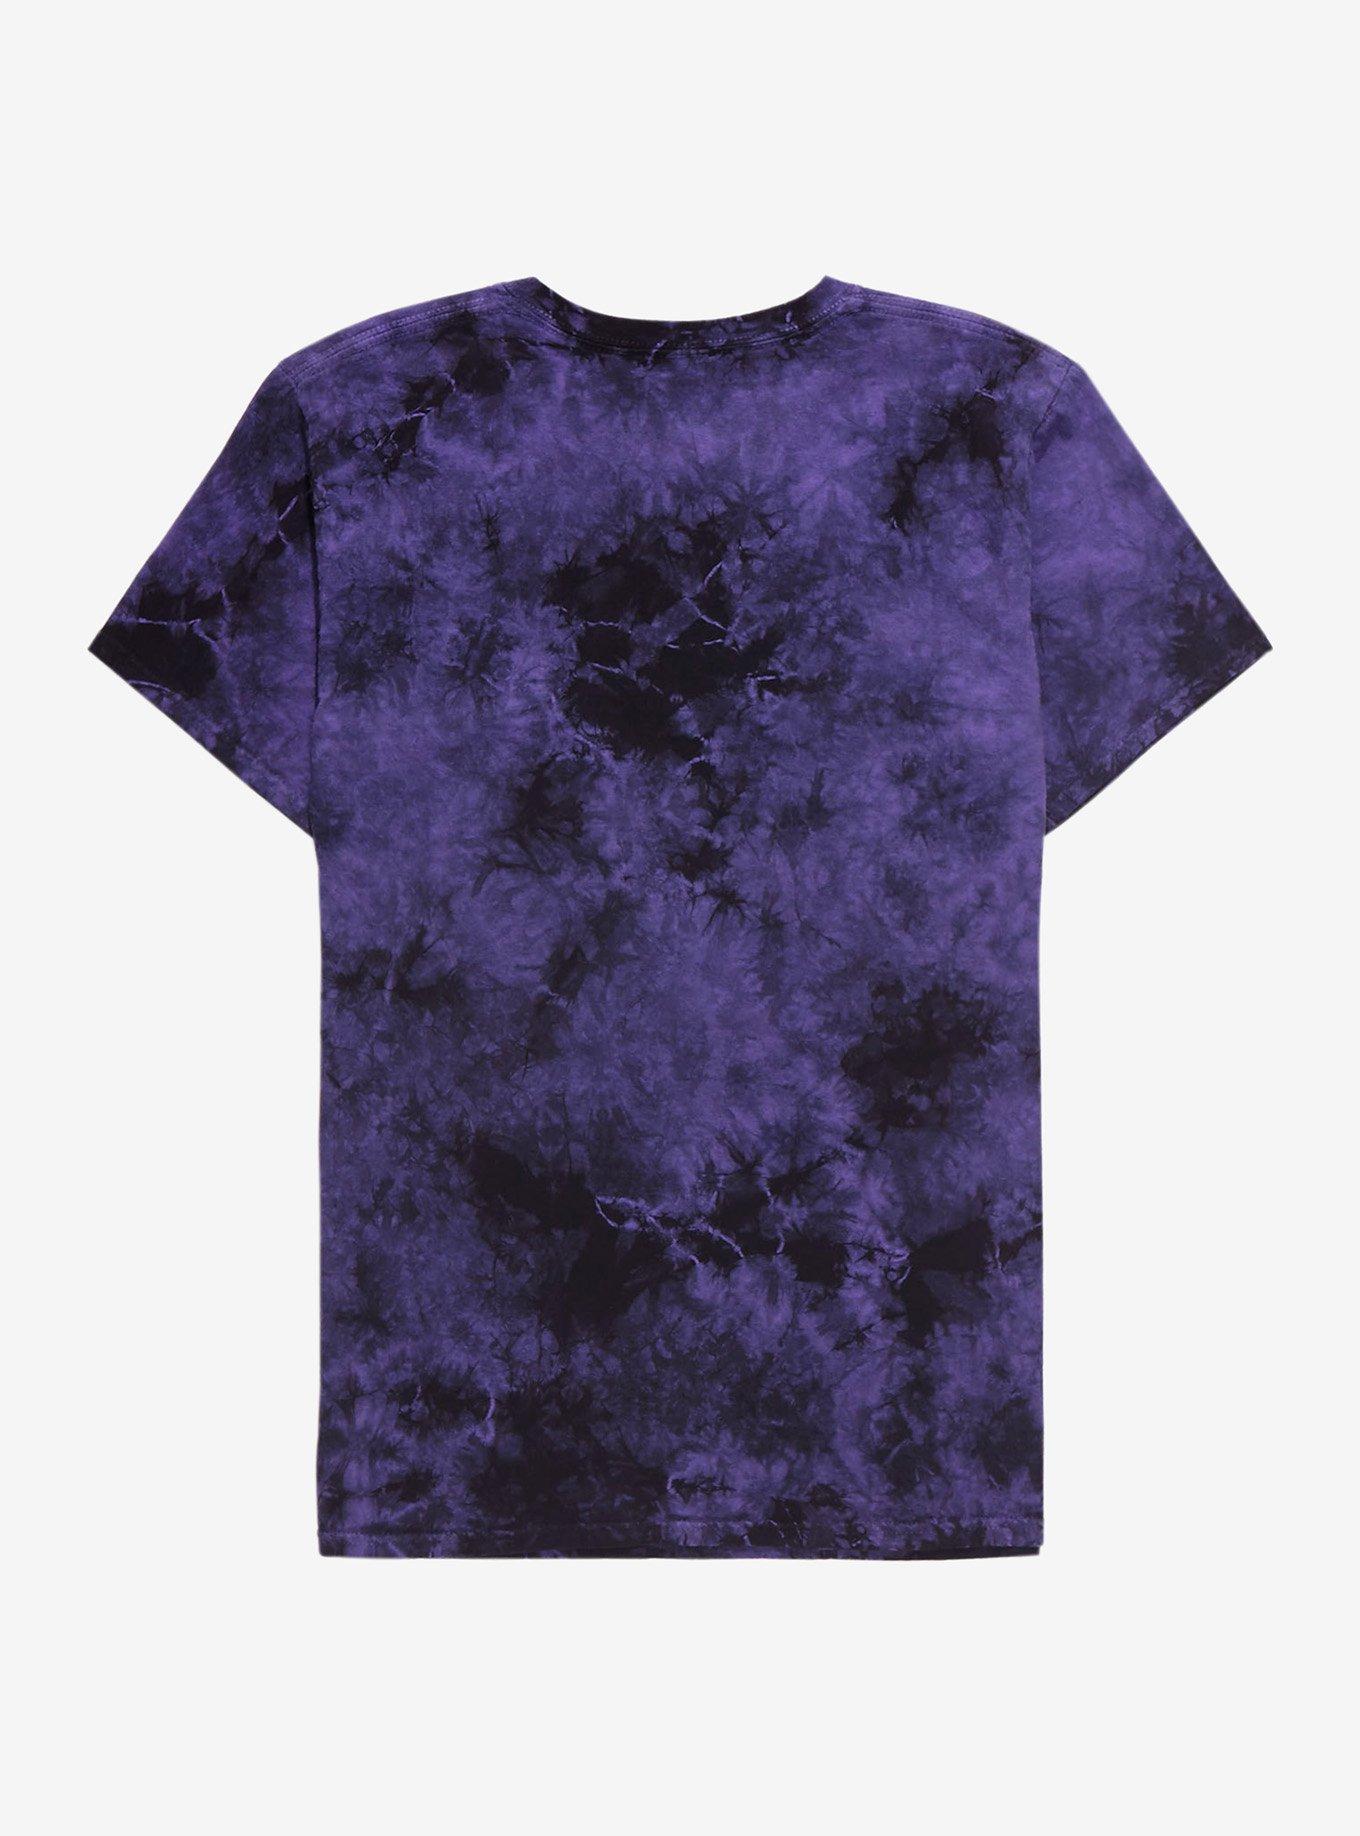 Zodiac Purple Tie-Dye Boyfriend Fit Girls T-Shirt, MULTI, alternate